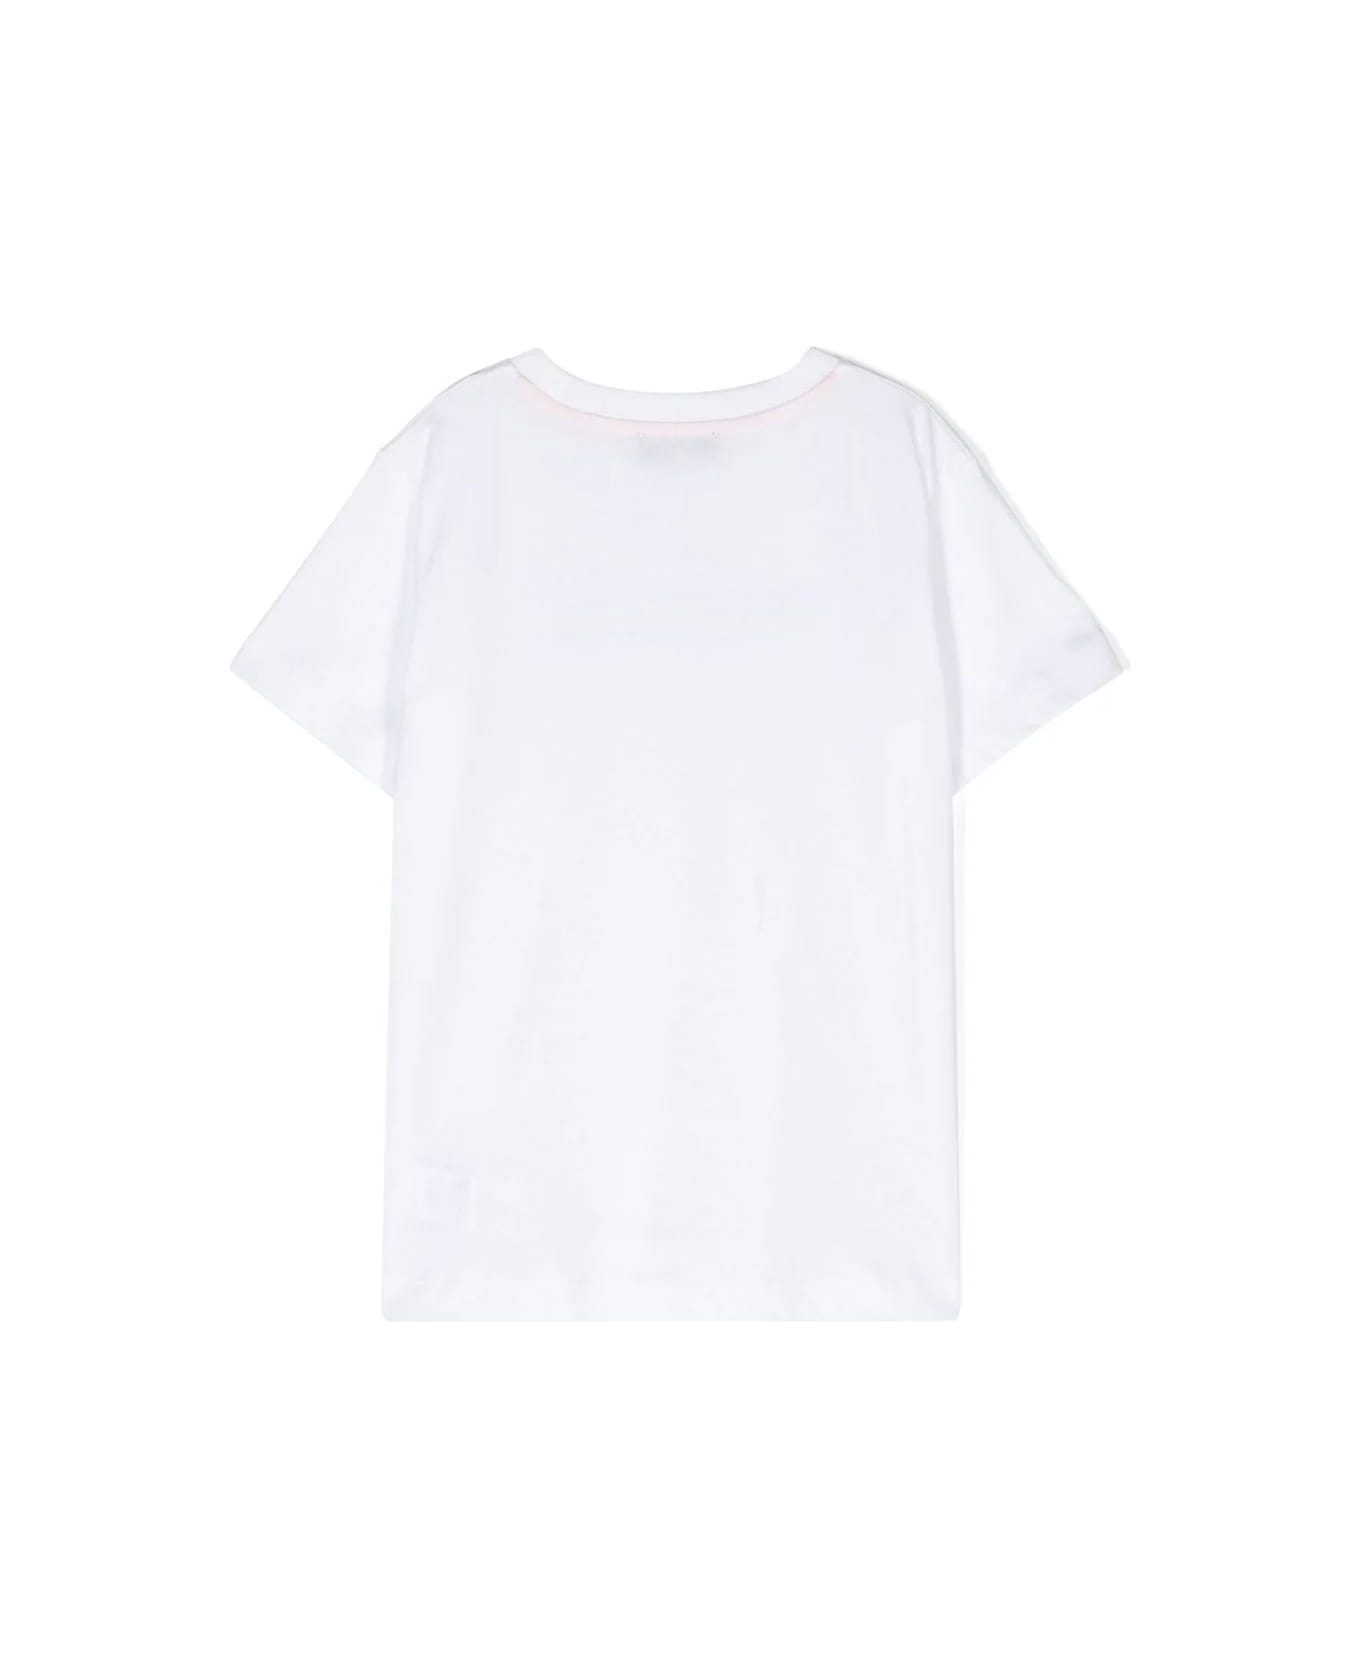 Missoni Kids White T-shirt With Chevron Logo - White